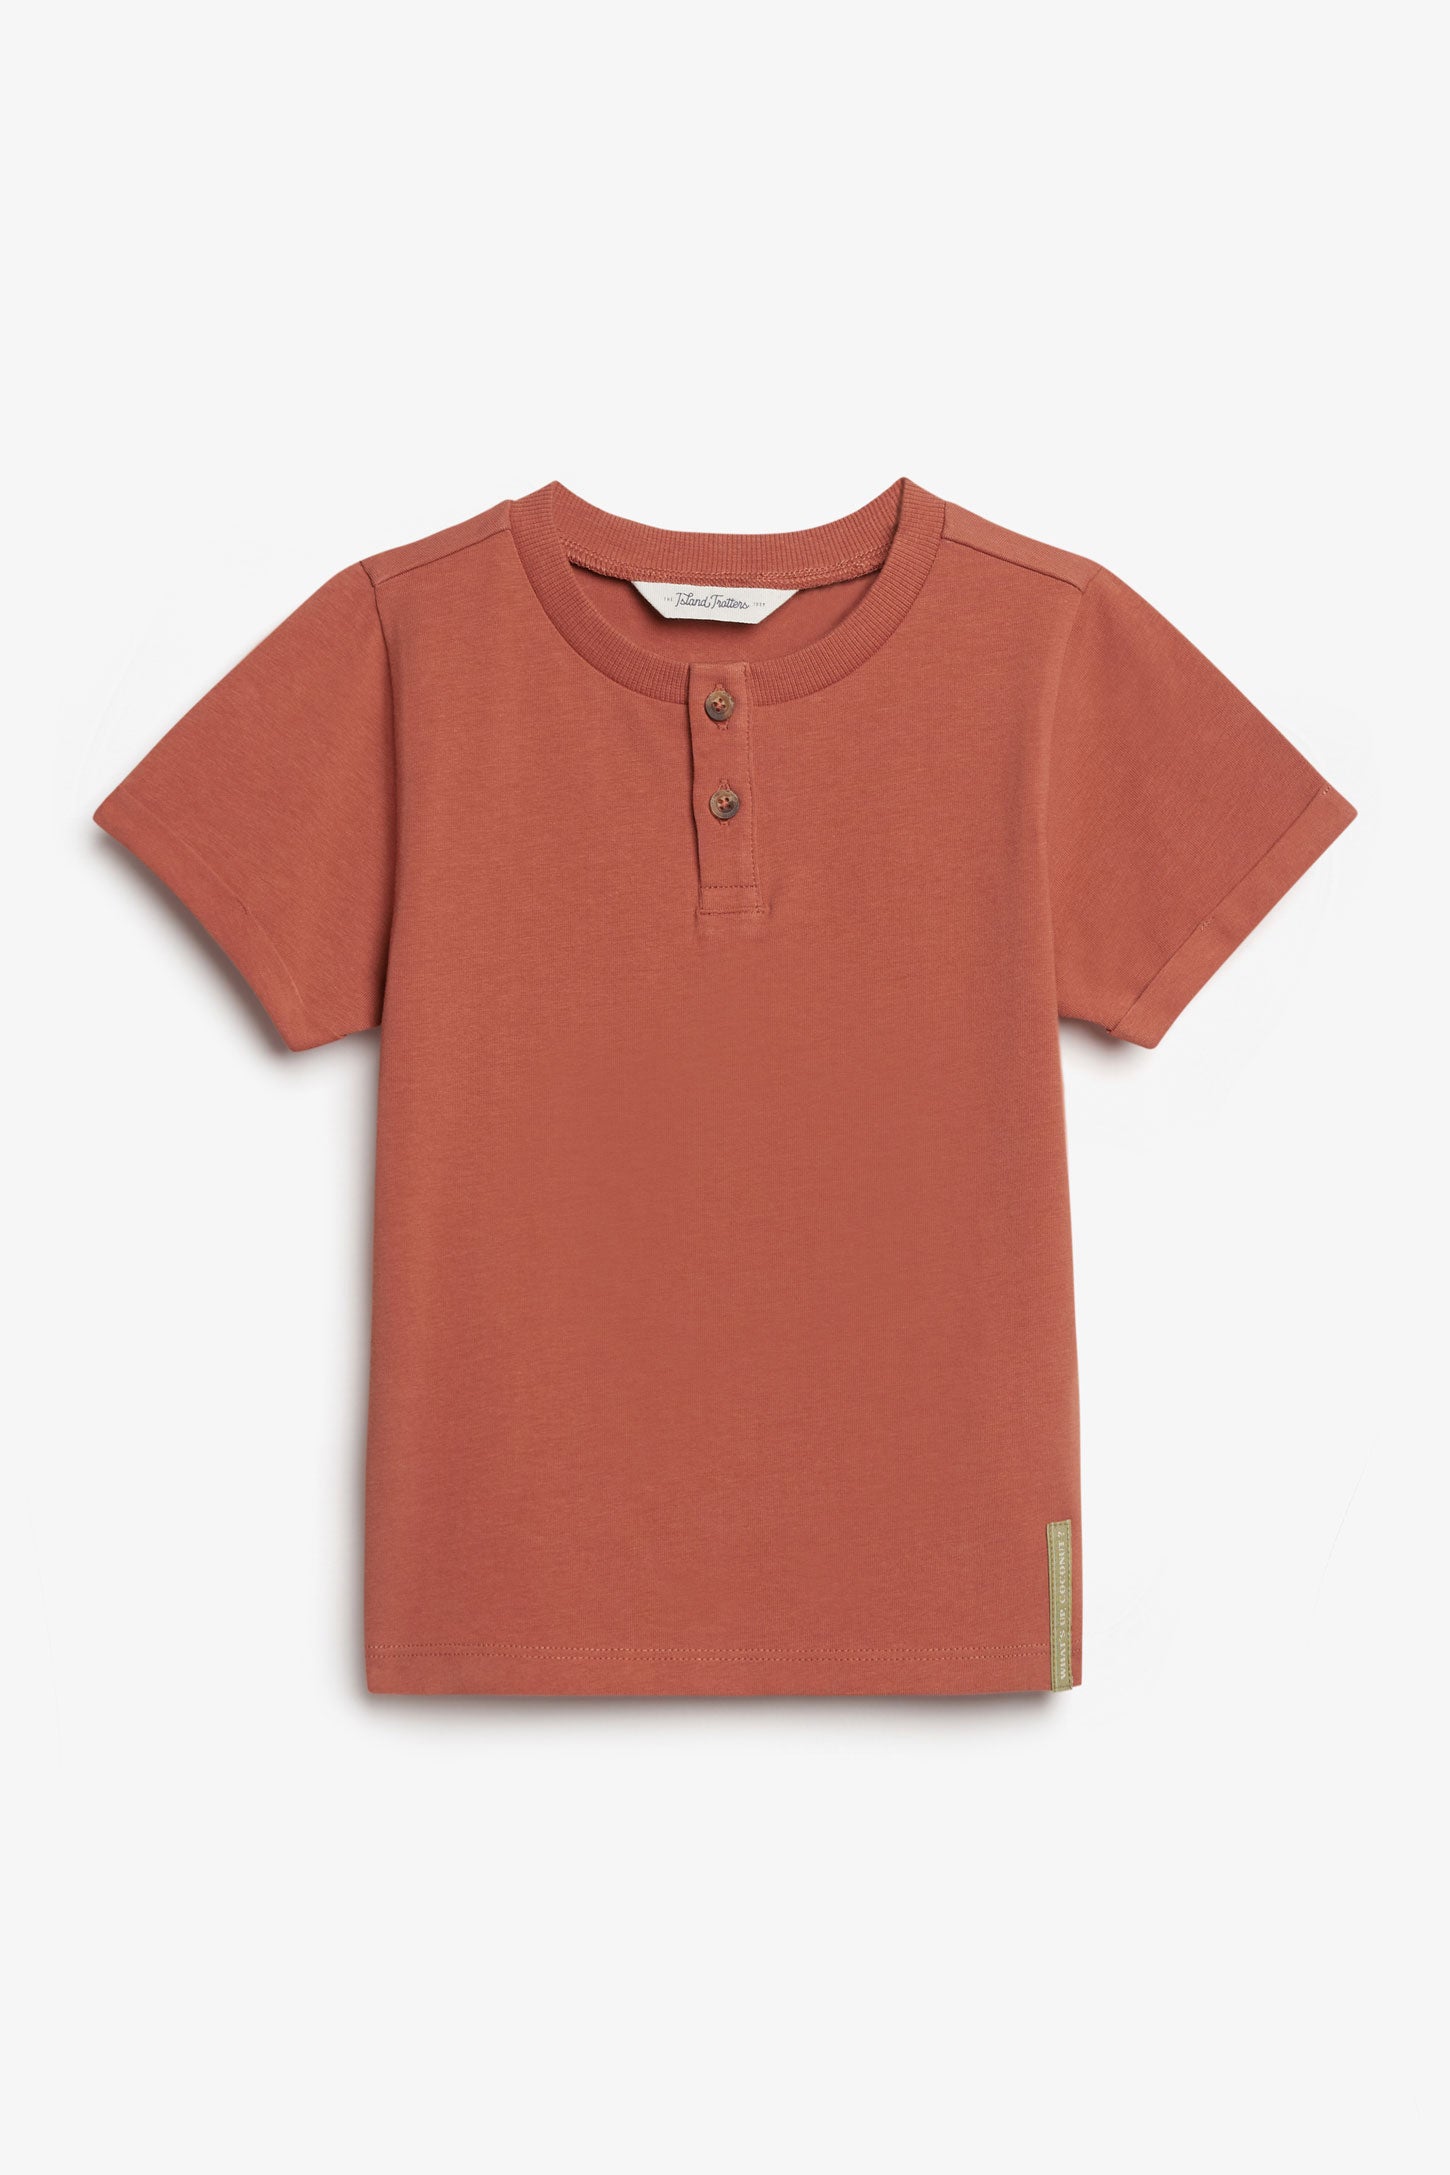 T-shirt henley en coton, 2T-3T - Bébé garçon && ROUILLE